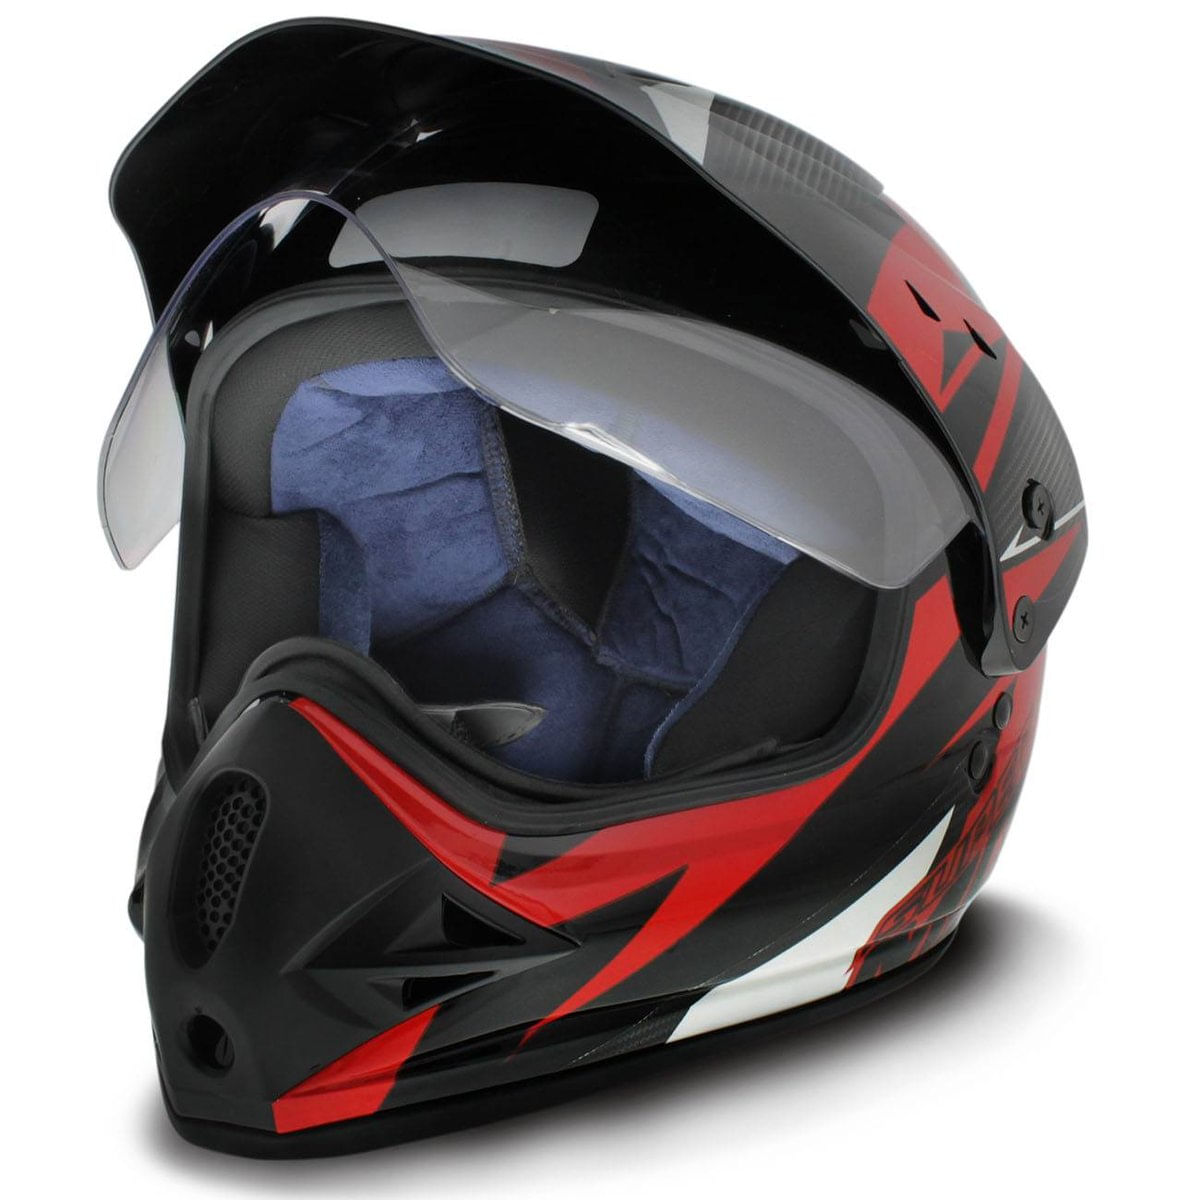 Featured image of post Fotos De Capacete De Motocross / Outlet de capacetes de moto baratos.